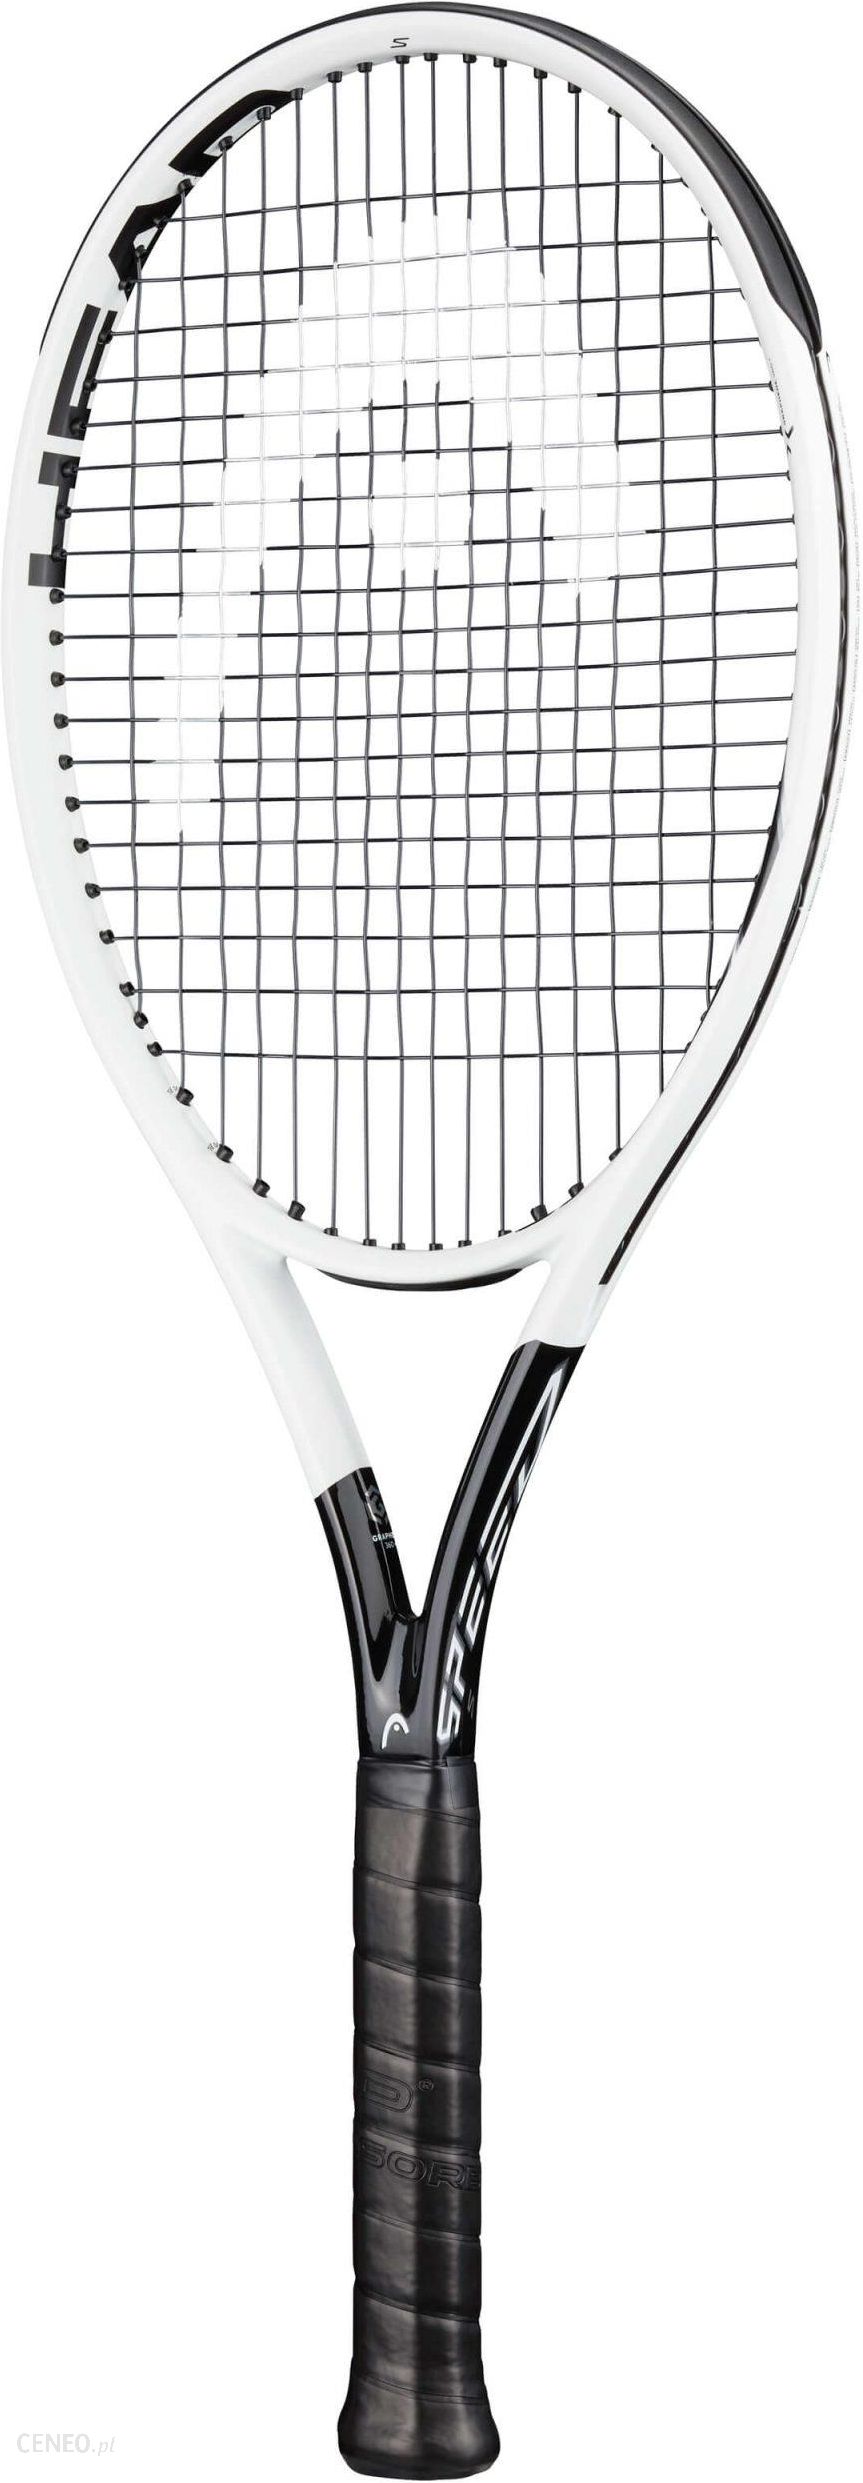 テニスラケット ヘッド グラフィン 360プラス スピード MP ライト 2020年モデル (G2)HEAD GRAPHENE 360+ SPEED MP LITE 2020